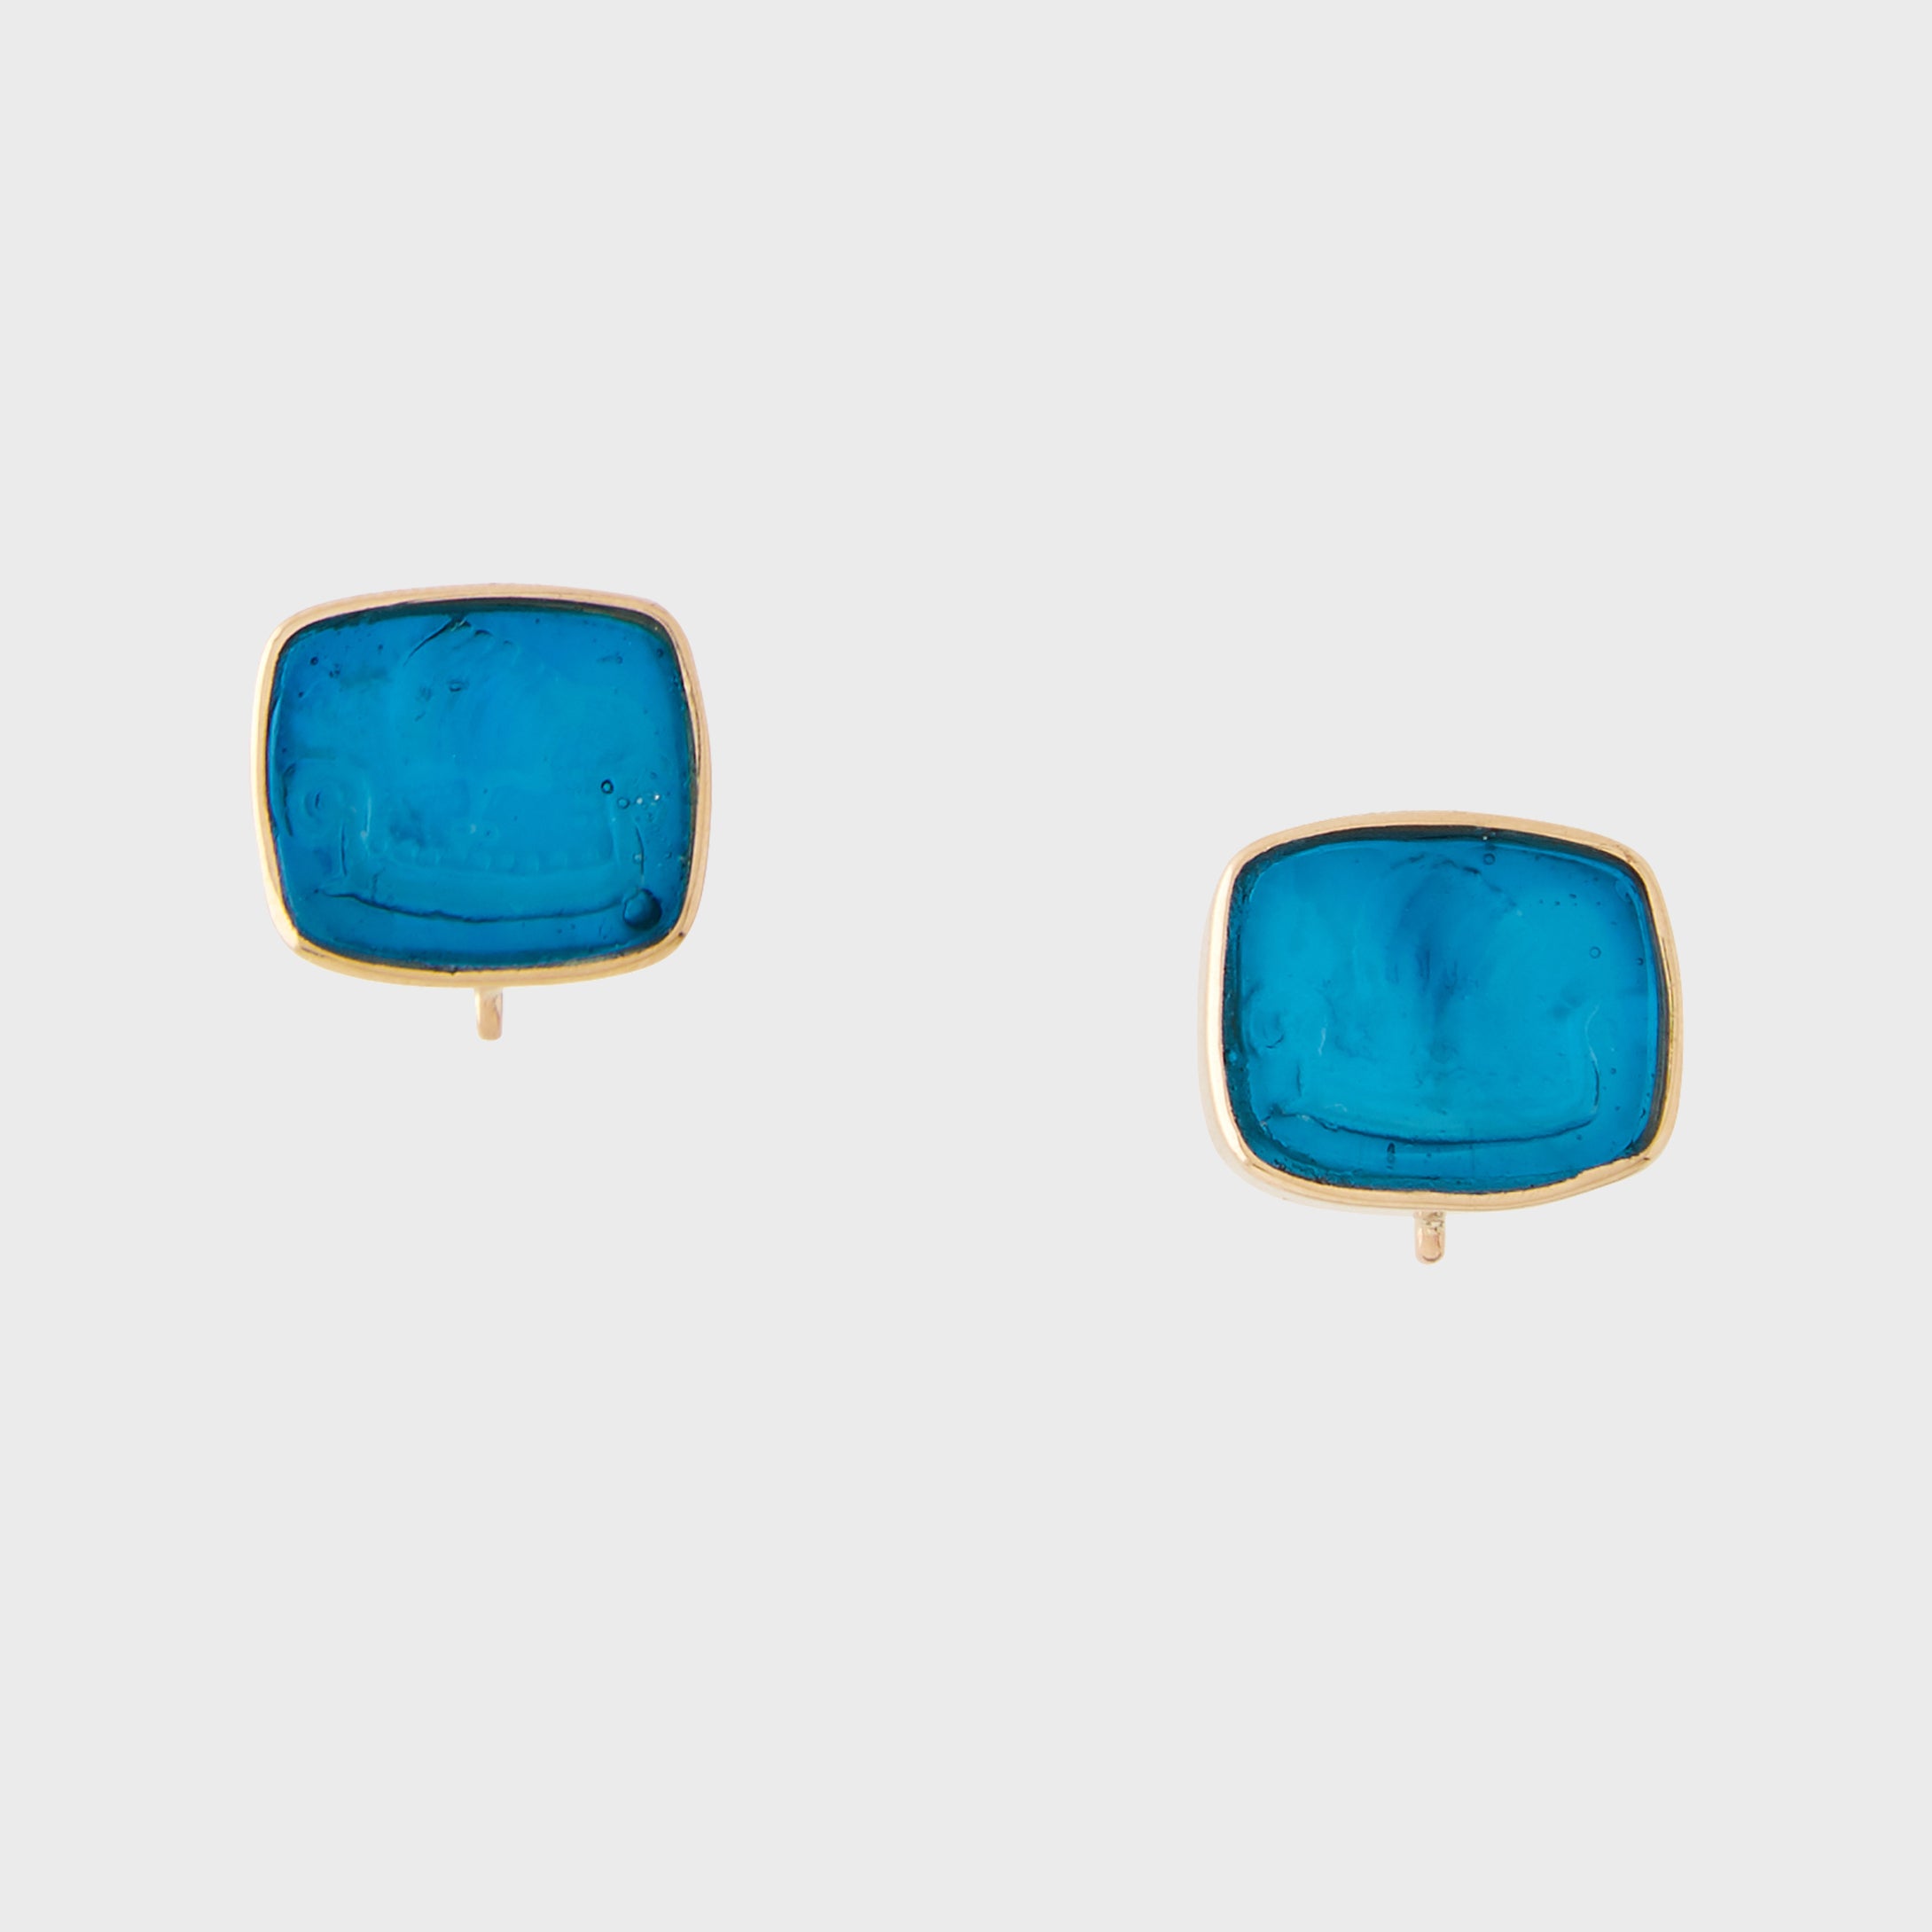 Italian Glass Caribbean Blue Sail Boat Earrings